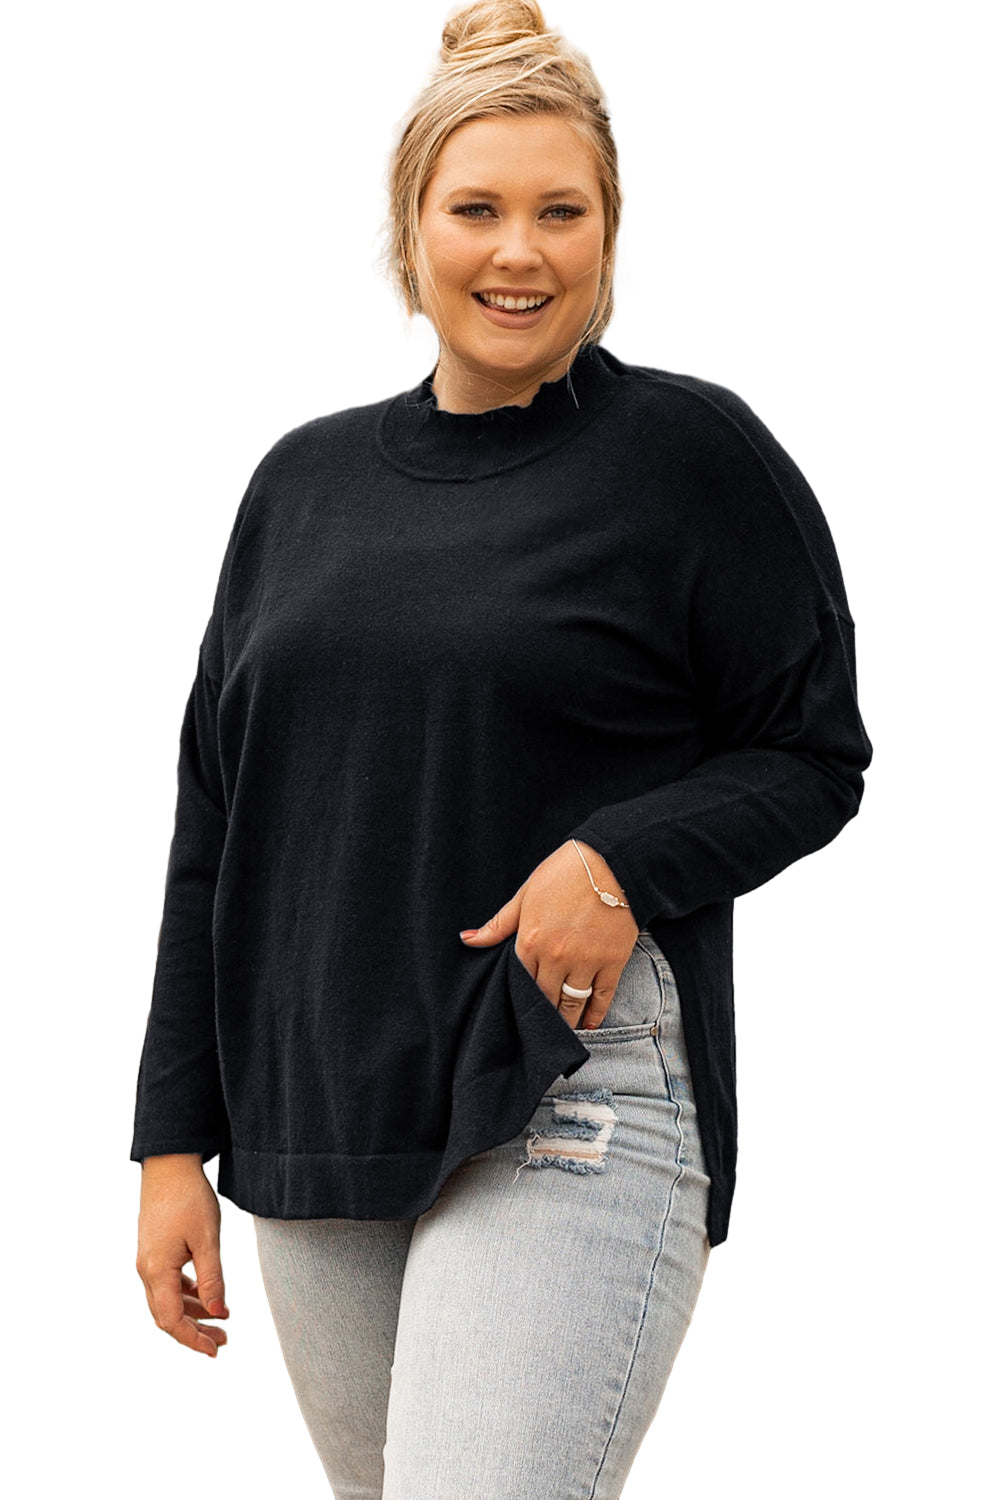 Schwarzer, lockerer Pullover mit seitlichen Schlitzen und Stehkragen in Übergröße